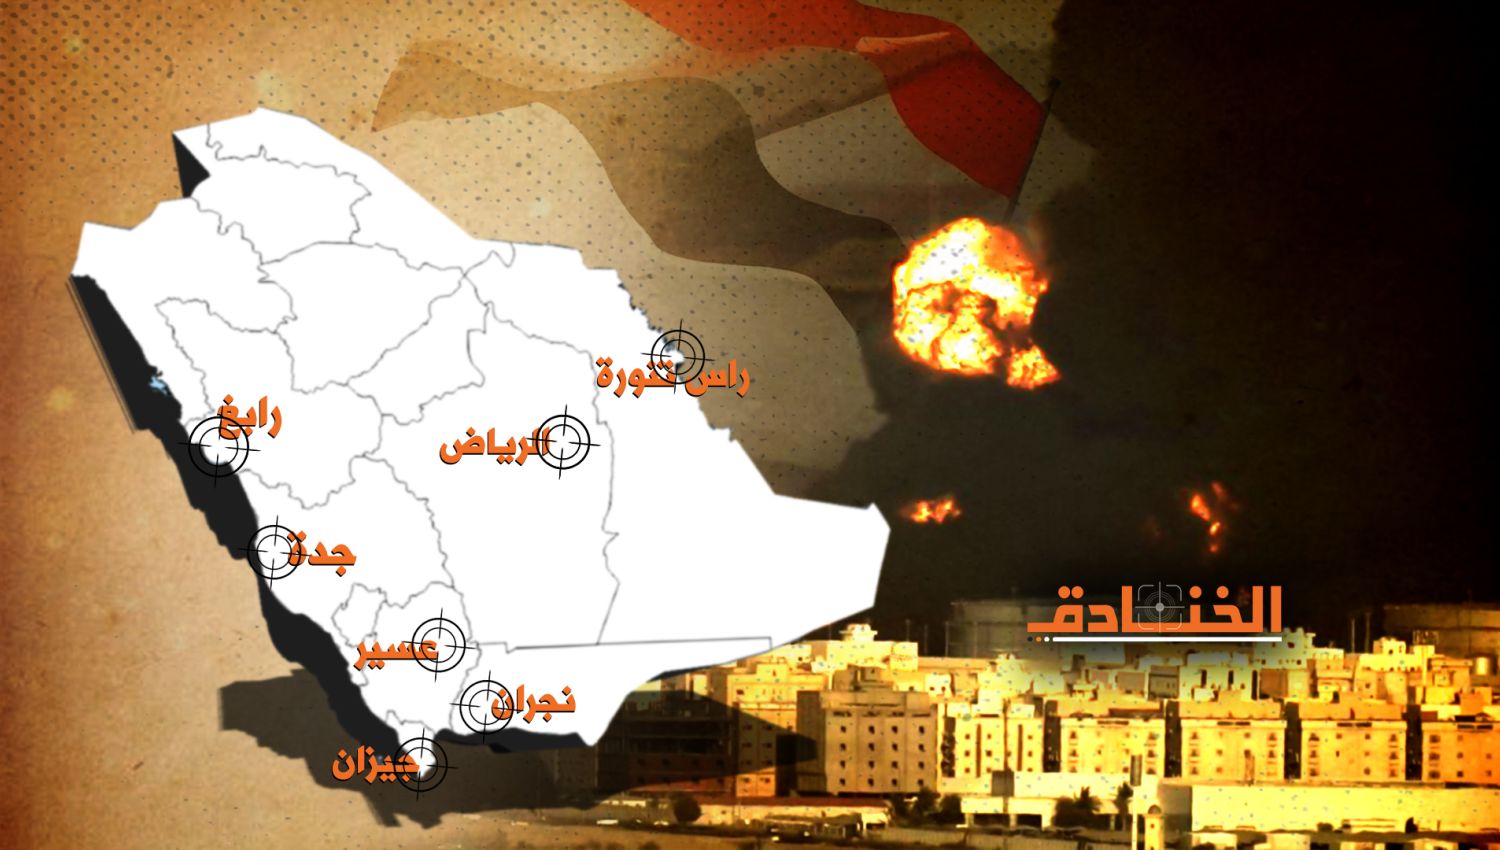 العام الثامن للحرب: اليمن بلد منتج للسلاح ووصل إلى الاكتفاء الذاتي